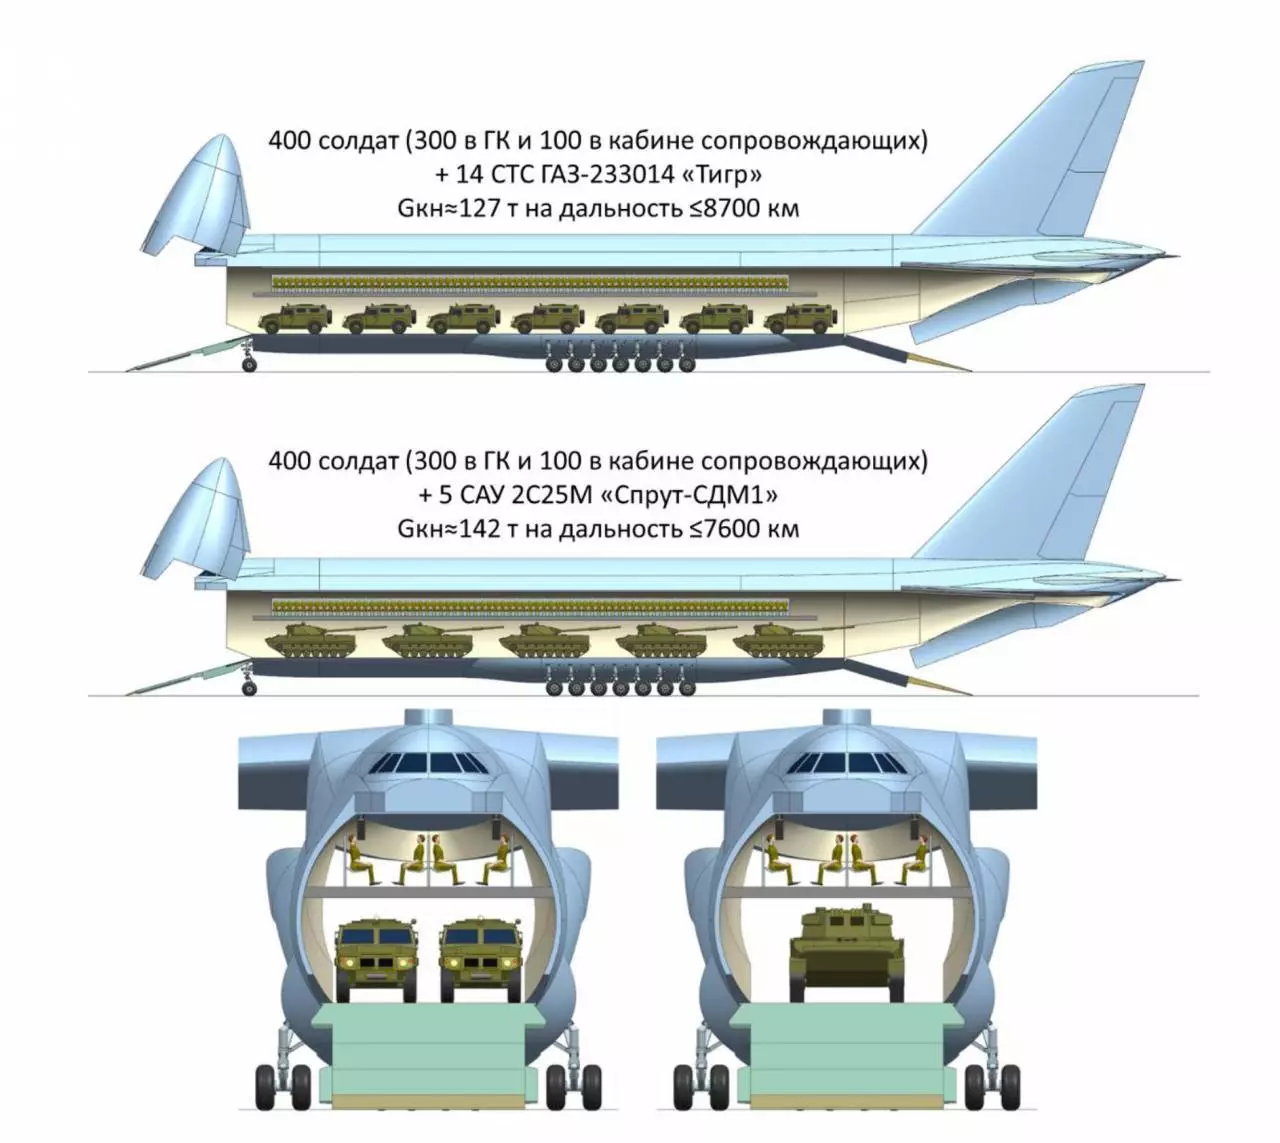 Транспортный самолет ан-124